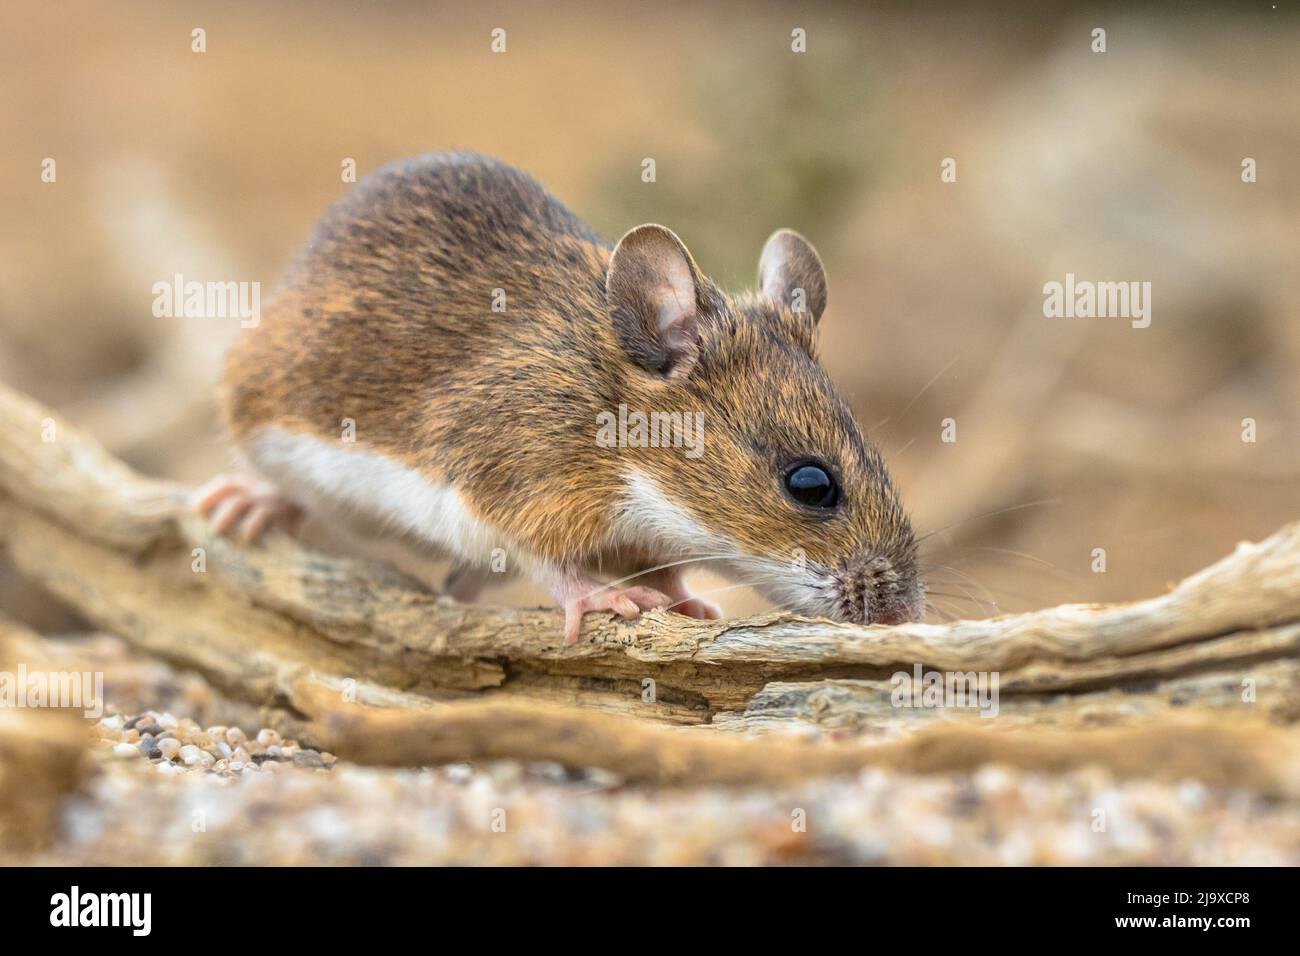 Ratón de cuello amarillo (Apodemus flavicollis) sentado en el registro y mirando la cámara en el fondo natural del hábitat arenoso Foto de stock